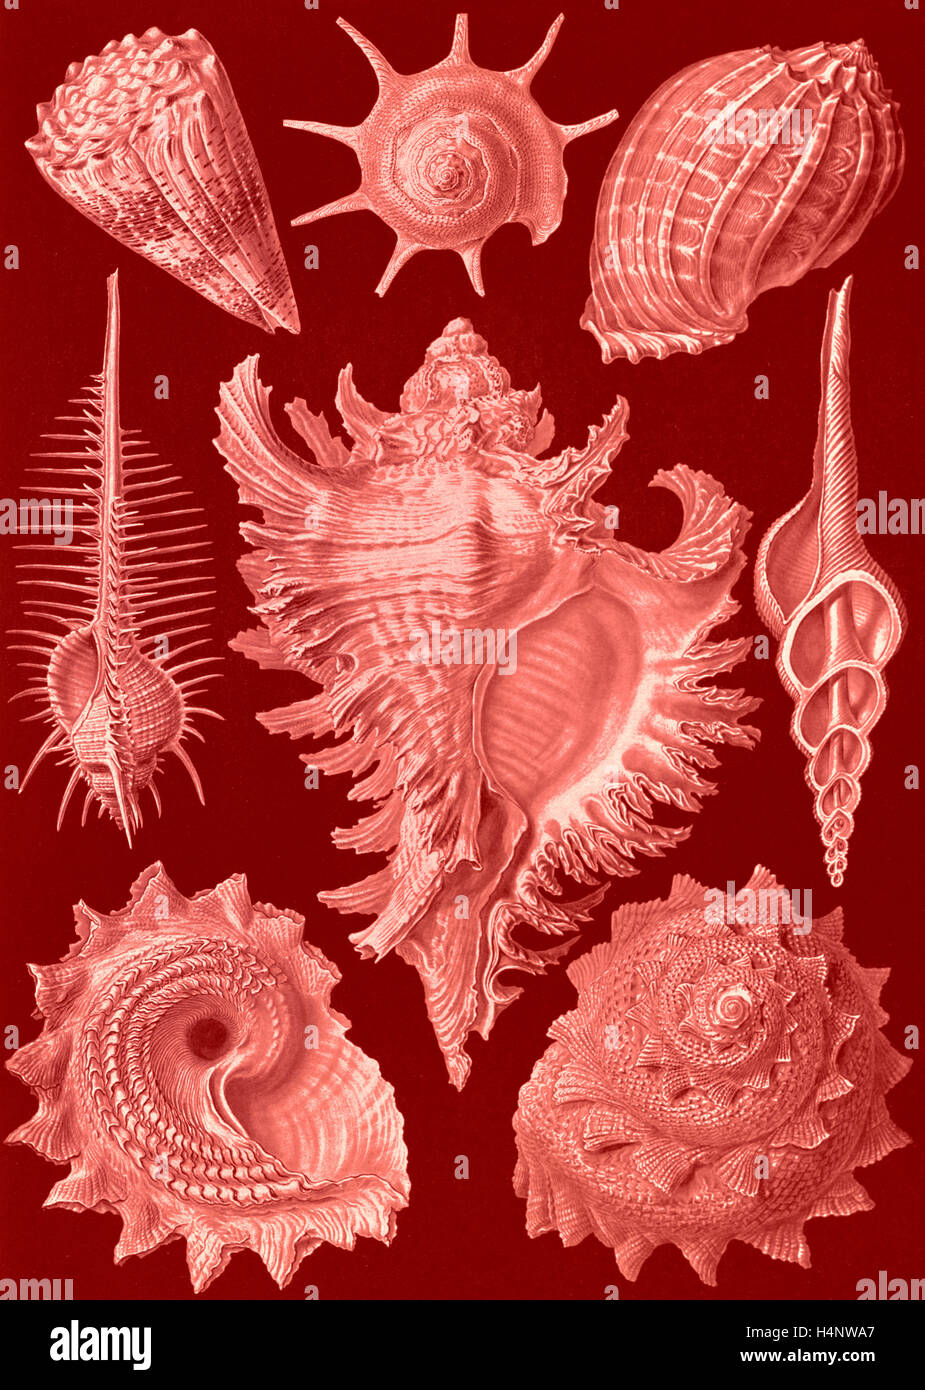 Illustrazione mostra acquatiche e terrestri di lumache. Prosobranchia. - Dorderkiemen-Schnecken, 1 stampa : photomechanical Foto Stock